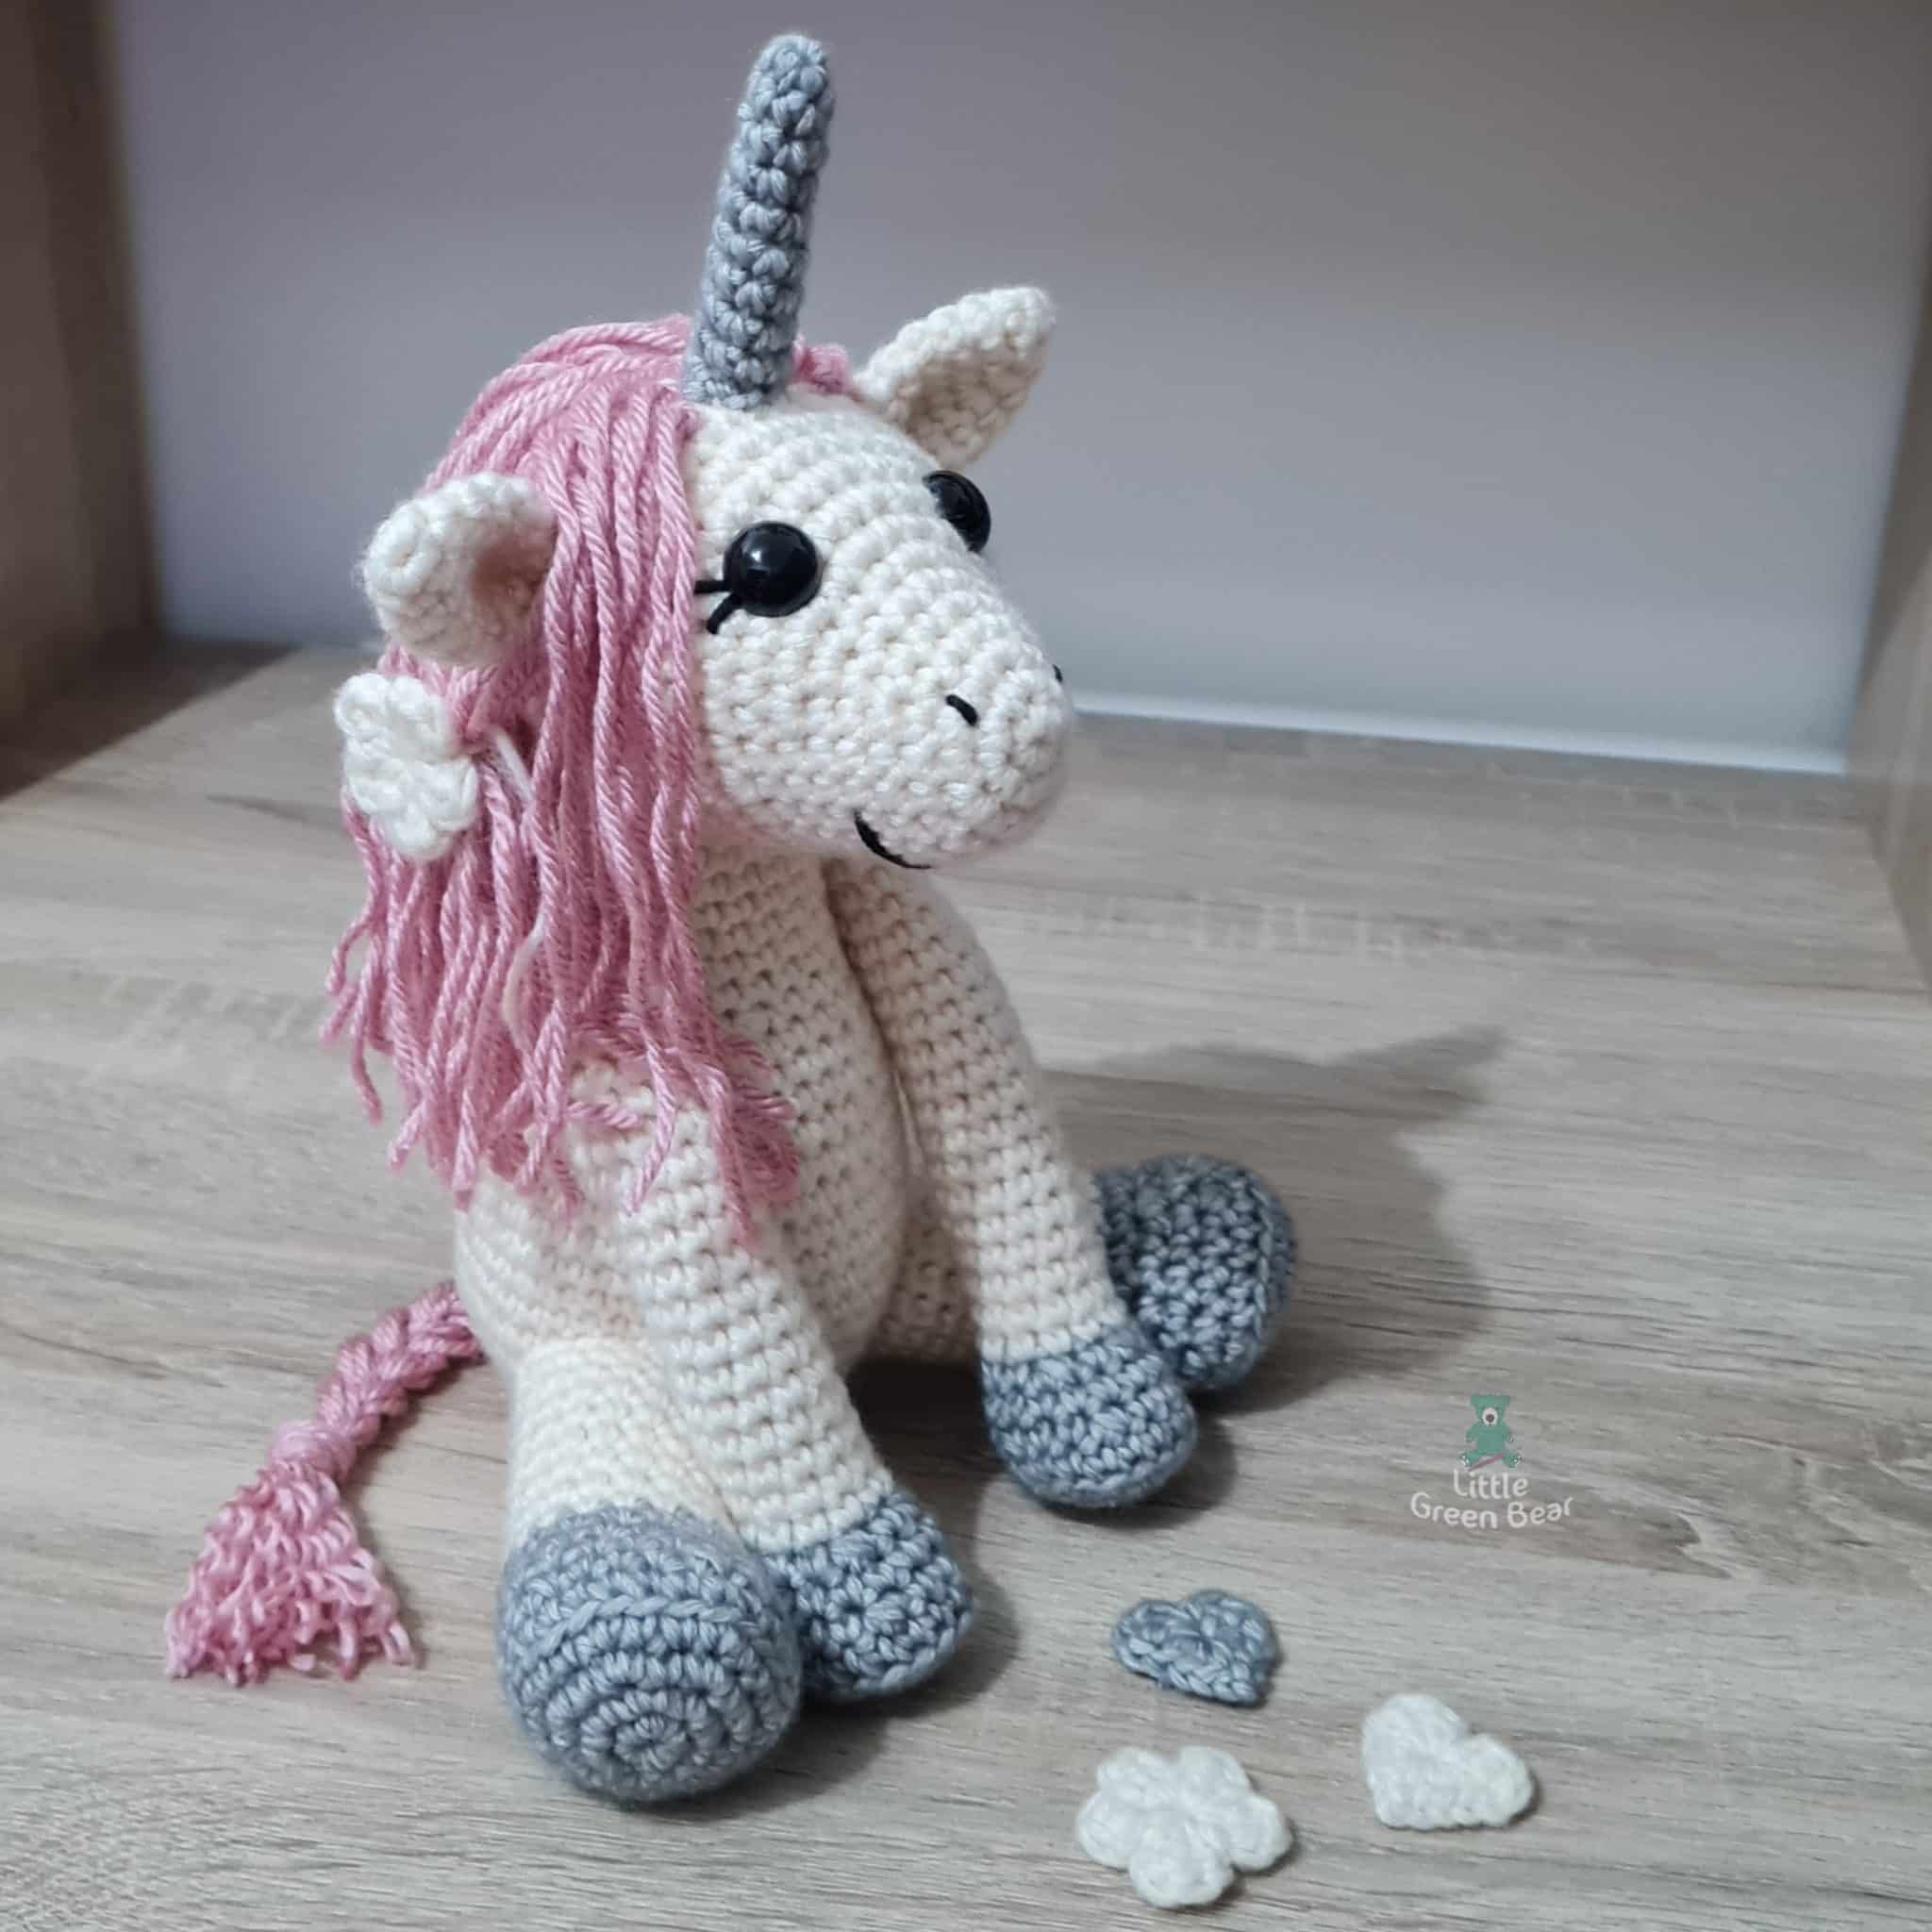 PDF Unicorn Crochet Pattern, Uma the Unicorn Crochet Pattern, Crochet Pattern, Unicorn Amigurumi Pattern